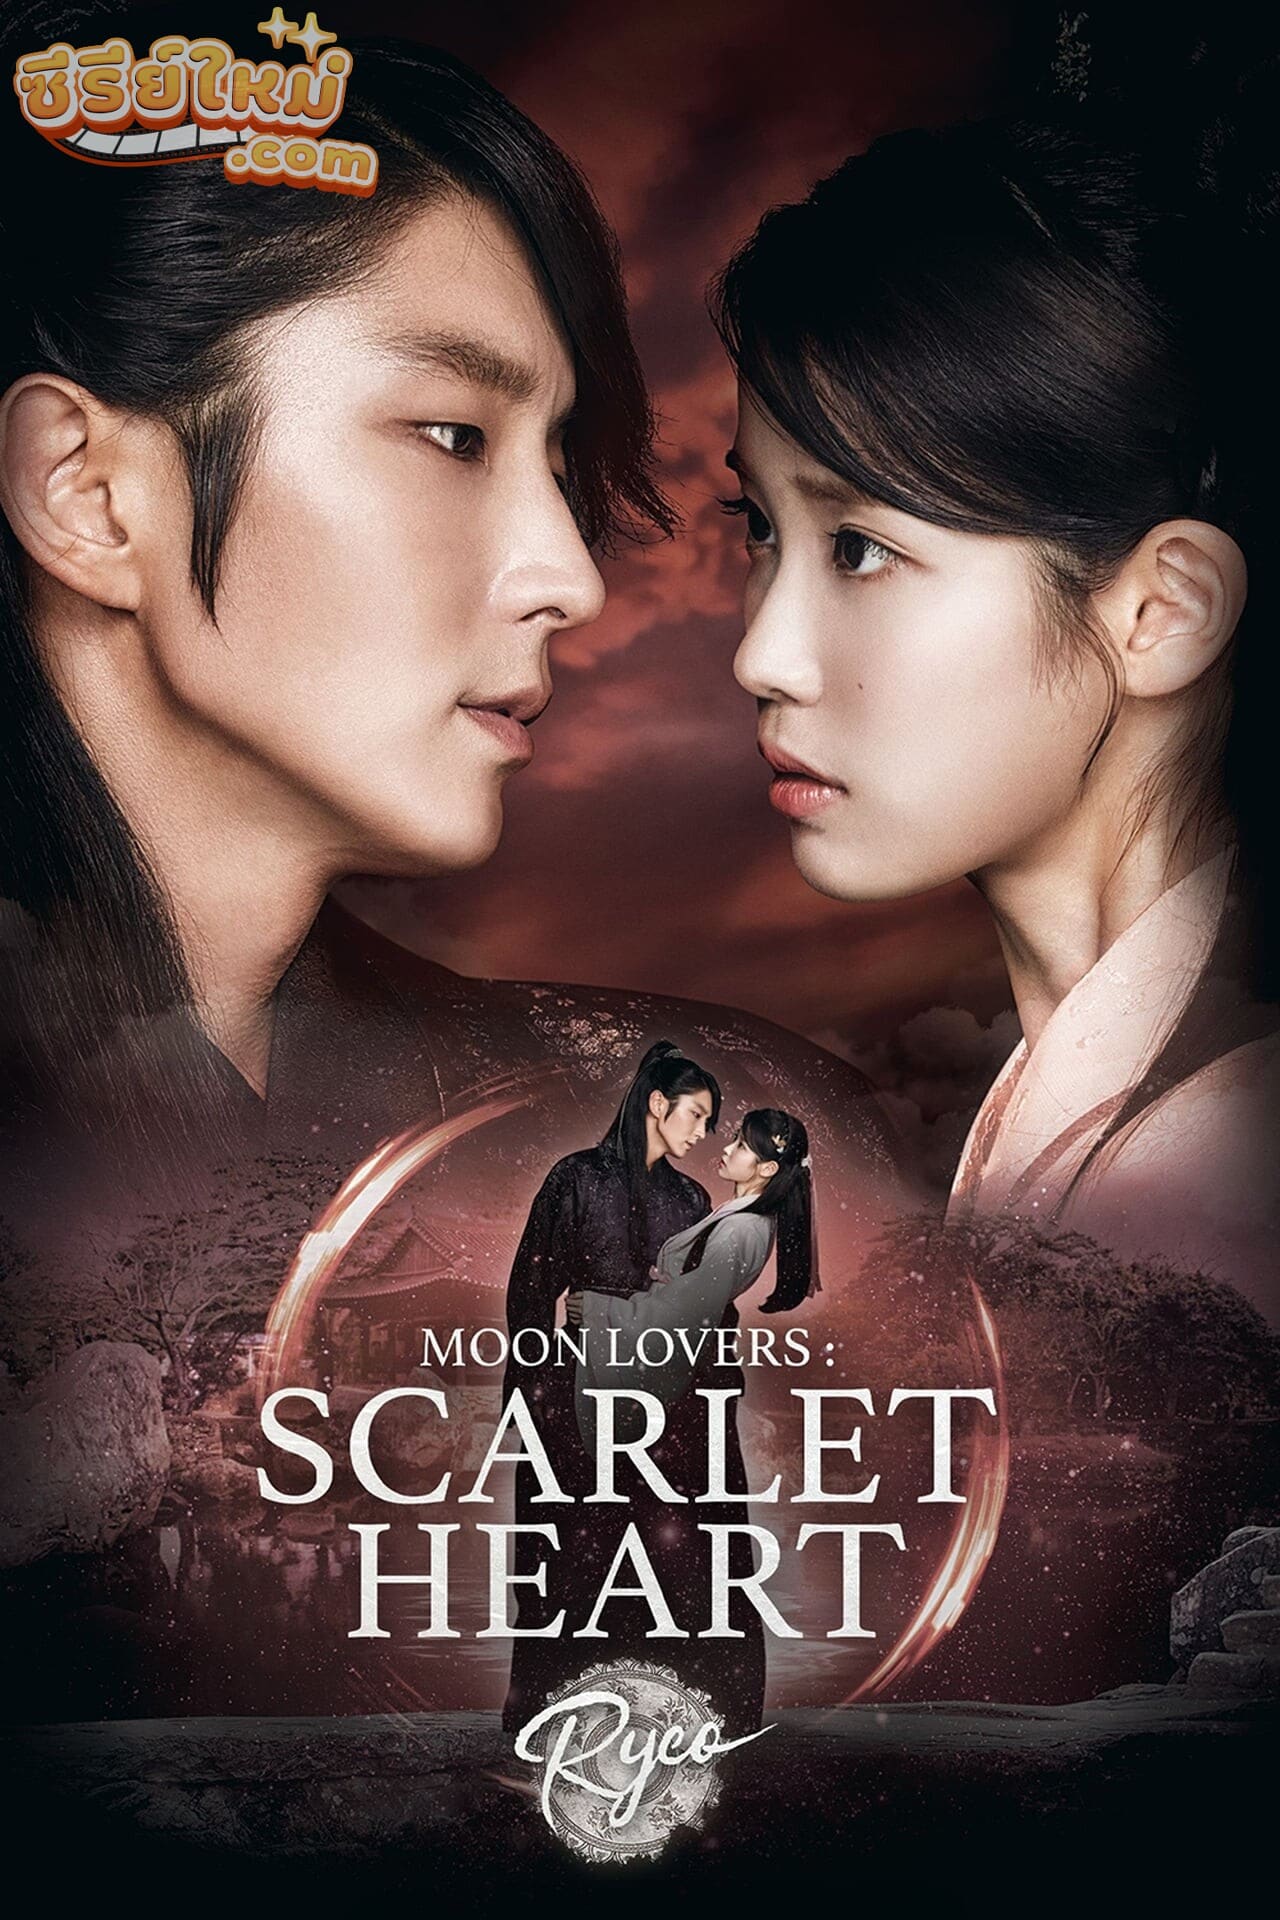 Moon Lovers: Scarlet Heart Ryeo ข้ามมิติ ลิขิตสวรรค์ (2016)